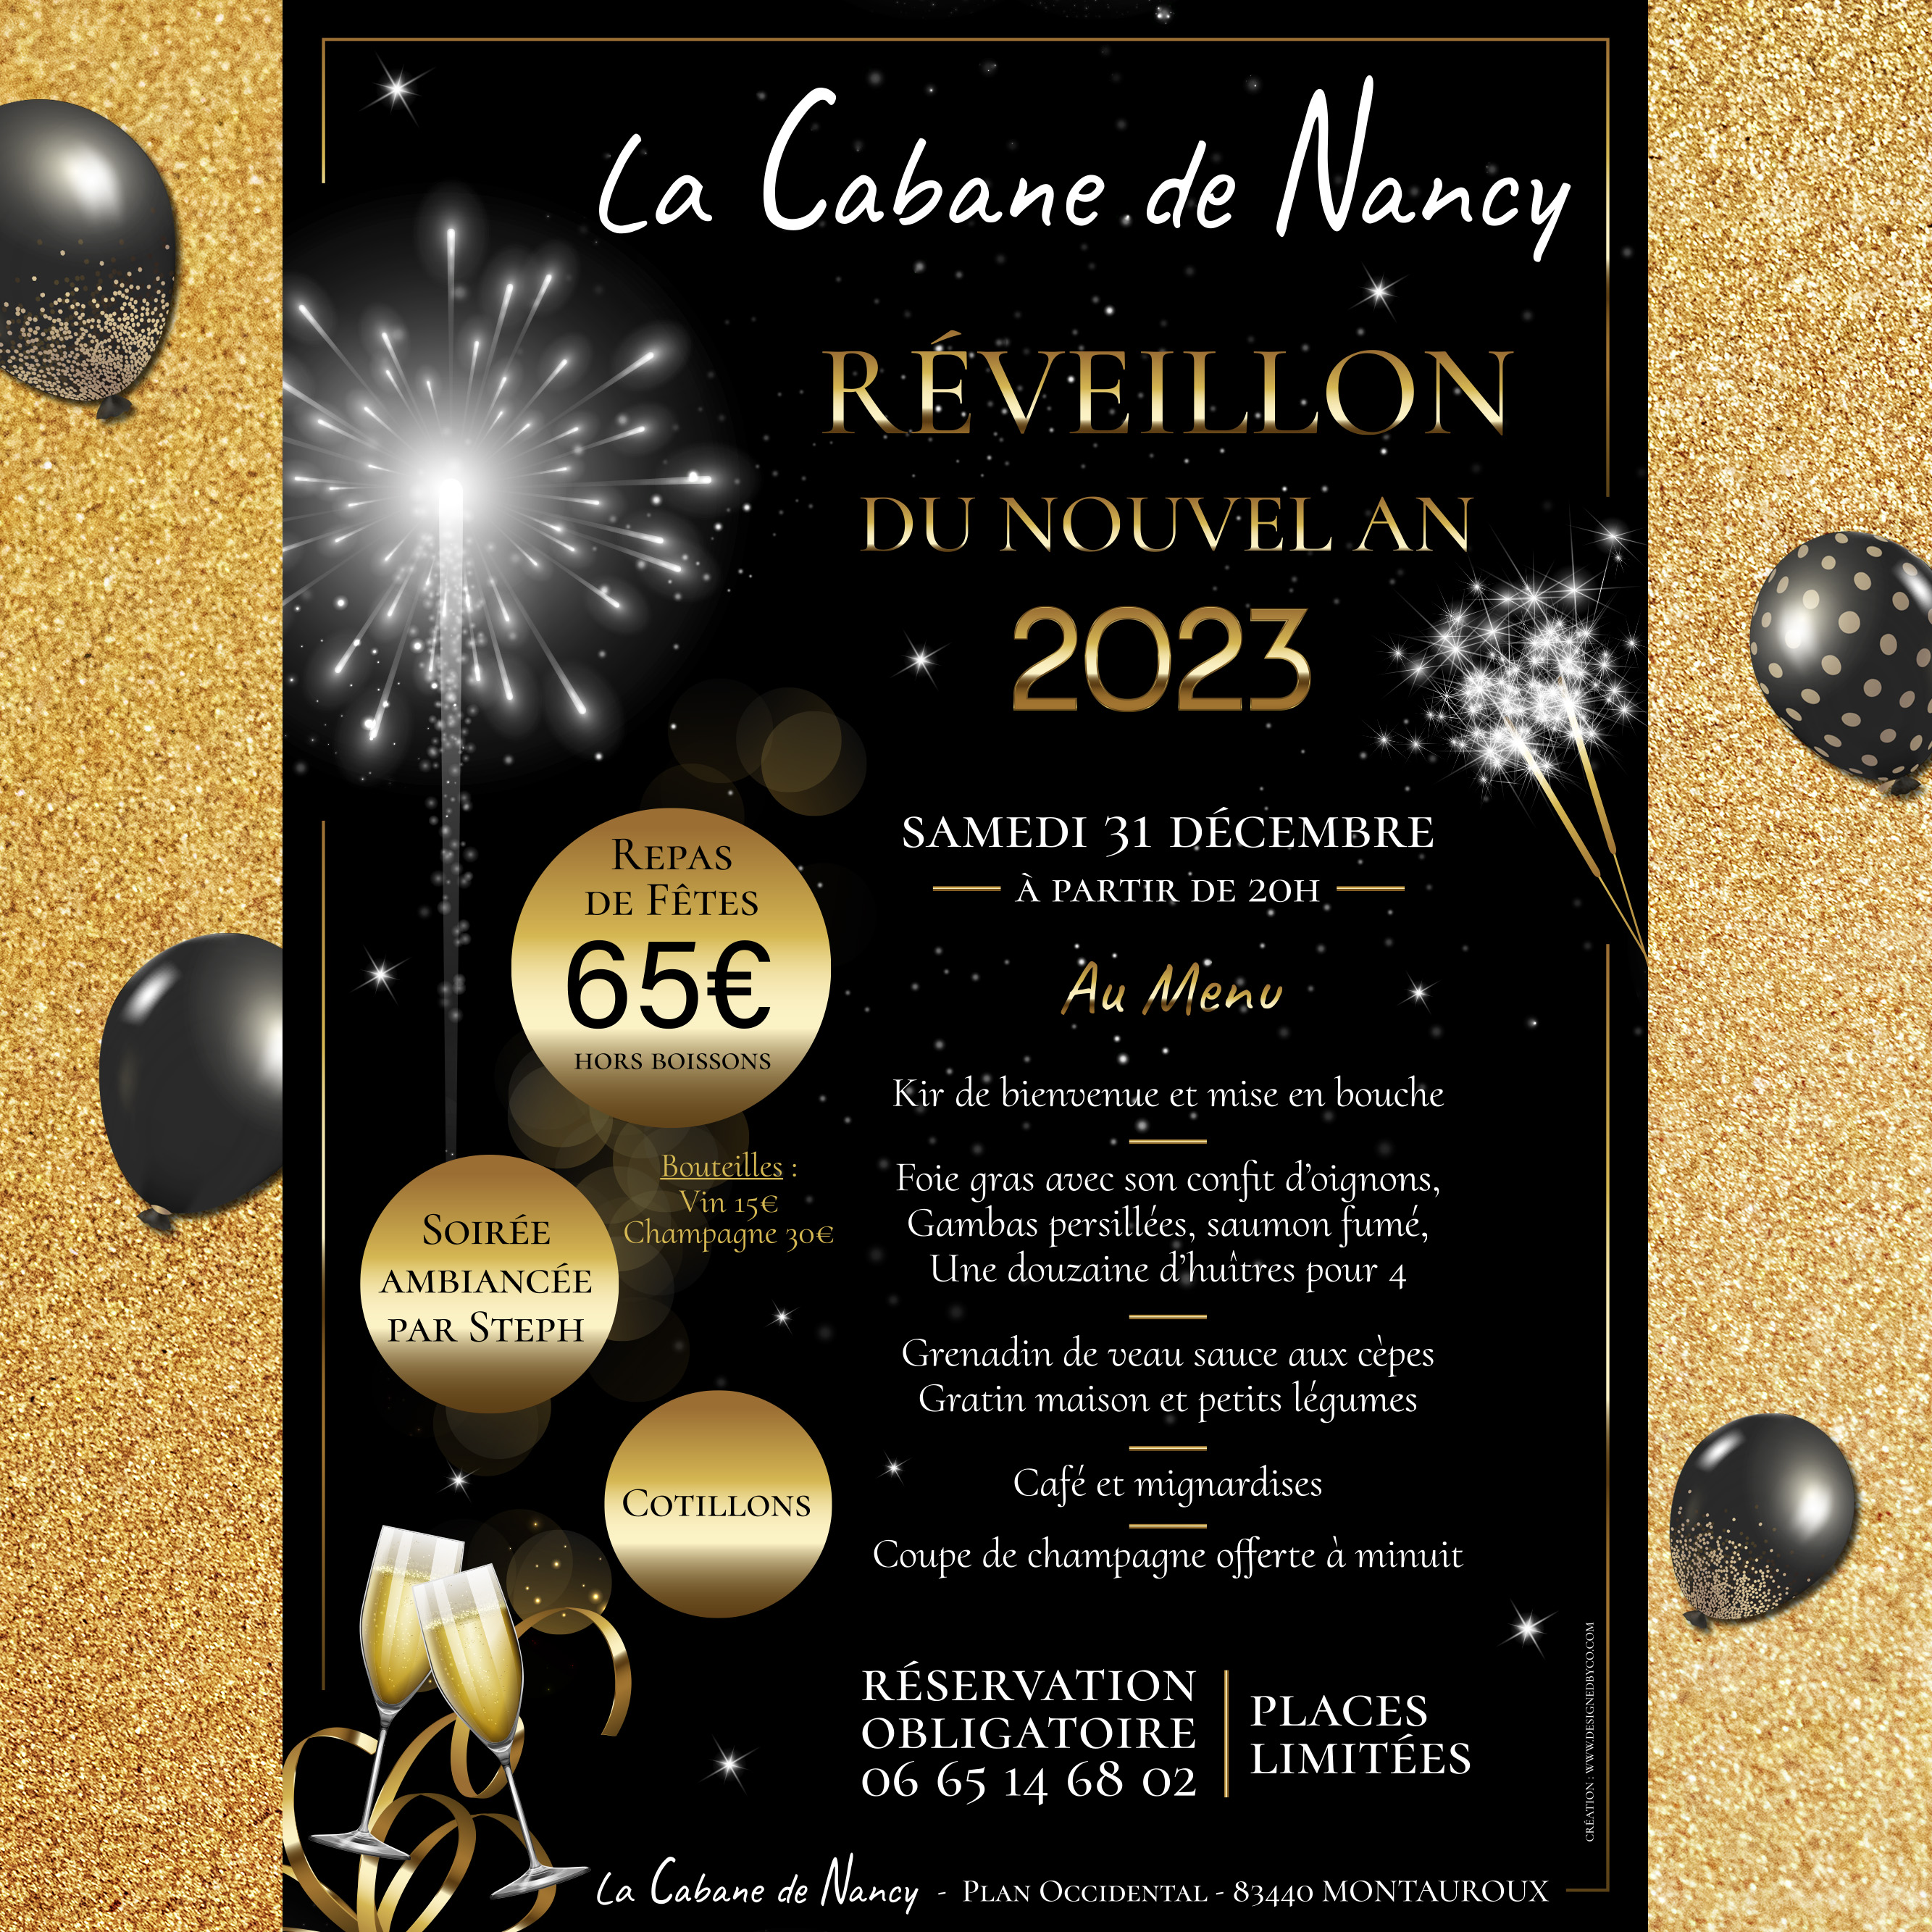 Affiche pour le Réveillon du Jour de l'An 2023 à la Cabane de Nancy